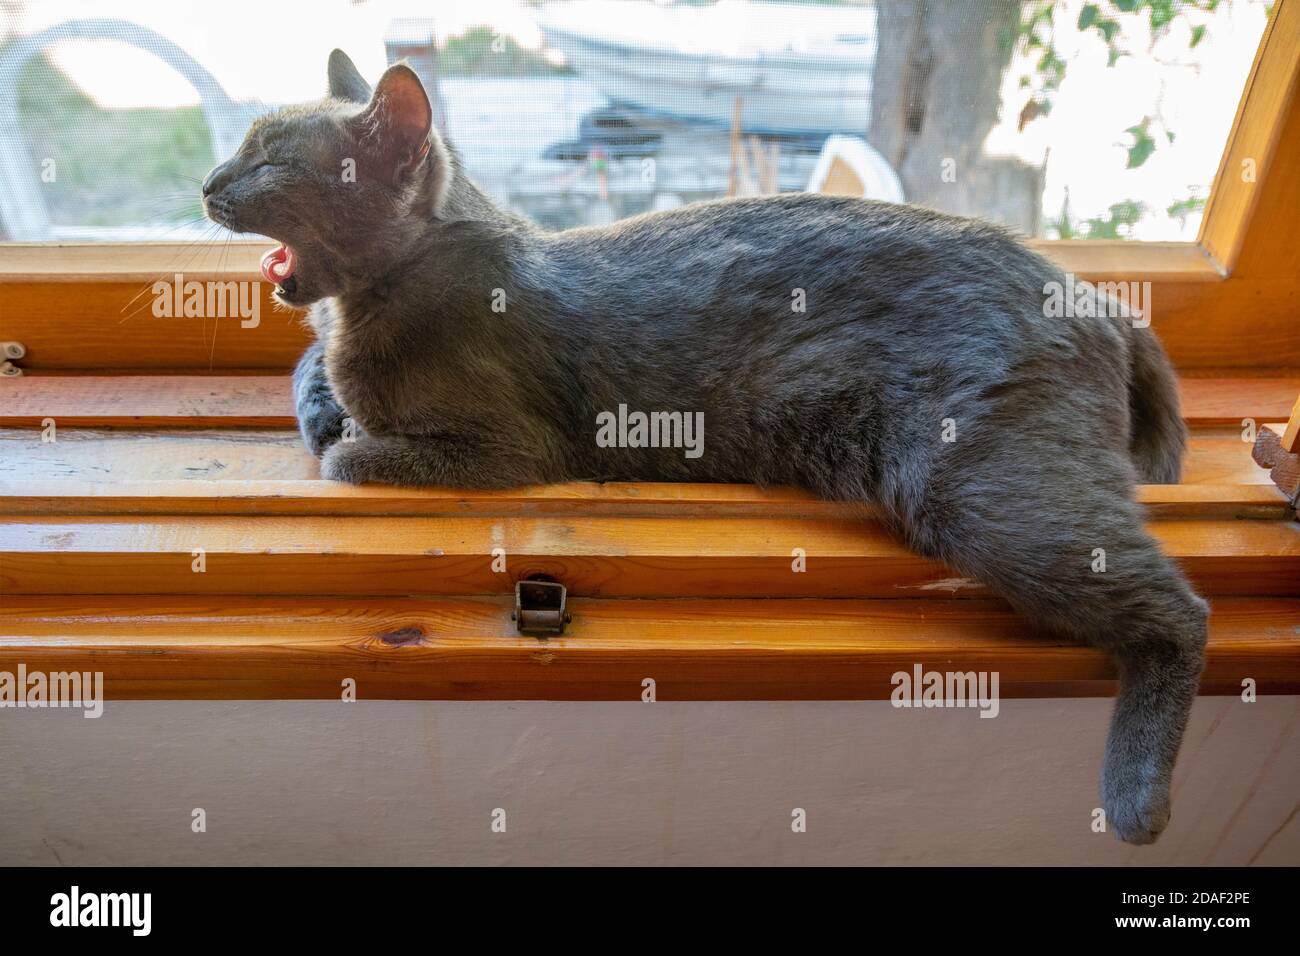 Le chat gris est couché confortable à l'intérieur d'un rebord de fenêtre en bois par une journée ensoleillée. Une jambe est suspendue au-dessus de la planche et le chat bâille. Banque D'Images